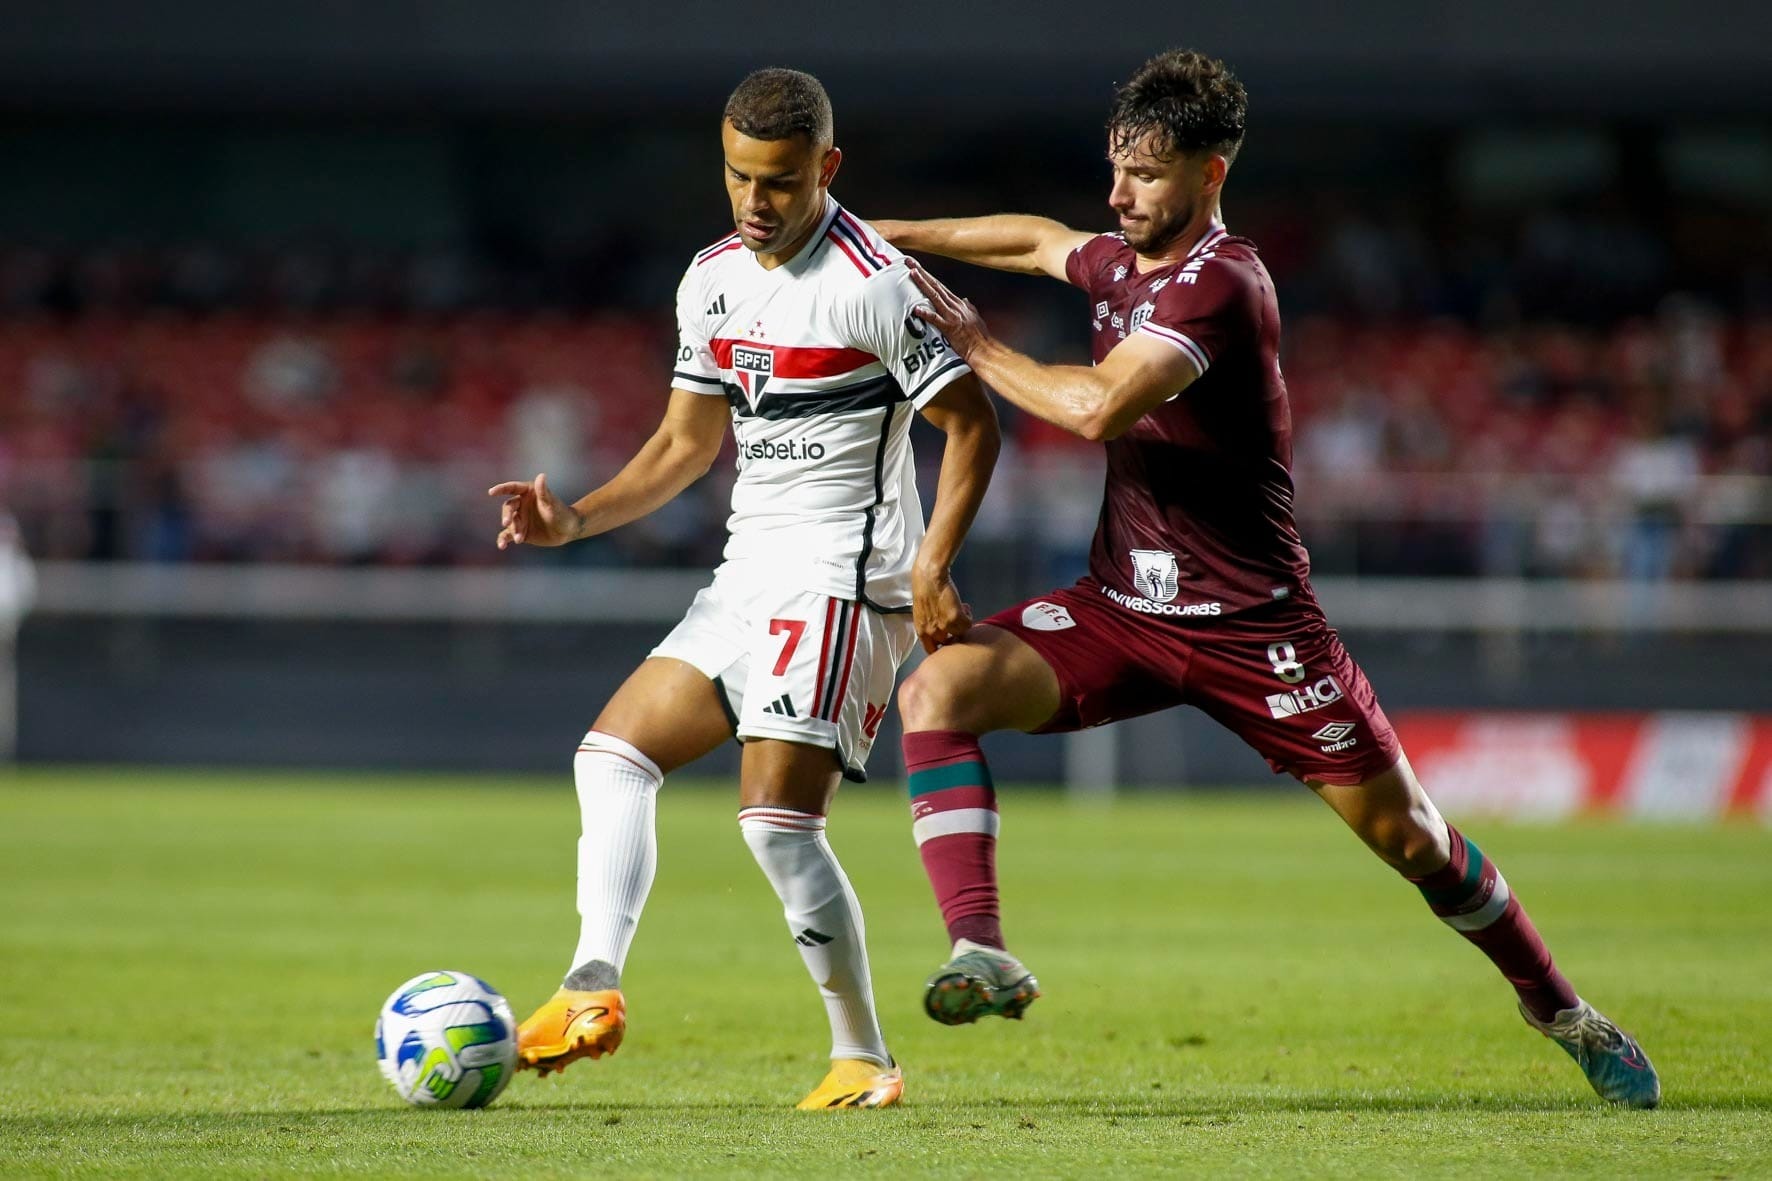 São Paulo FC - 🎧 Agora o pré-jogo de Fluminense x São